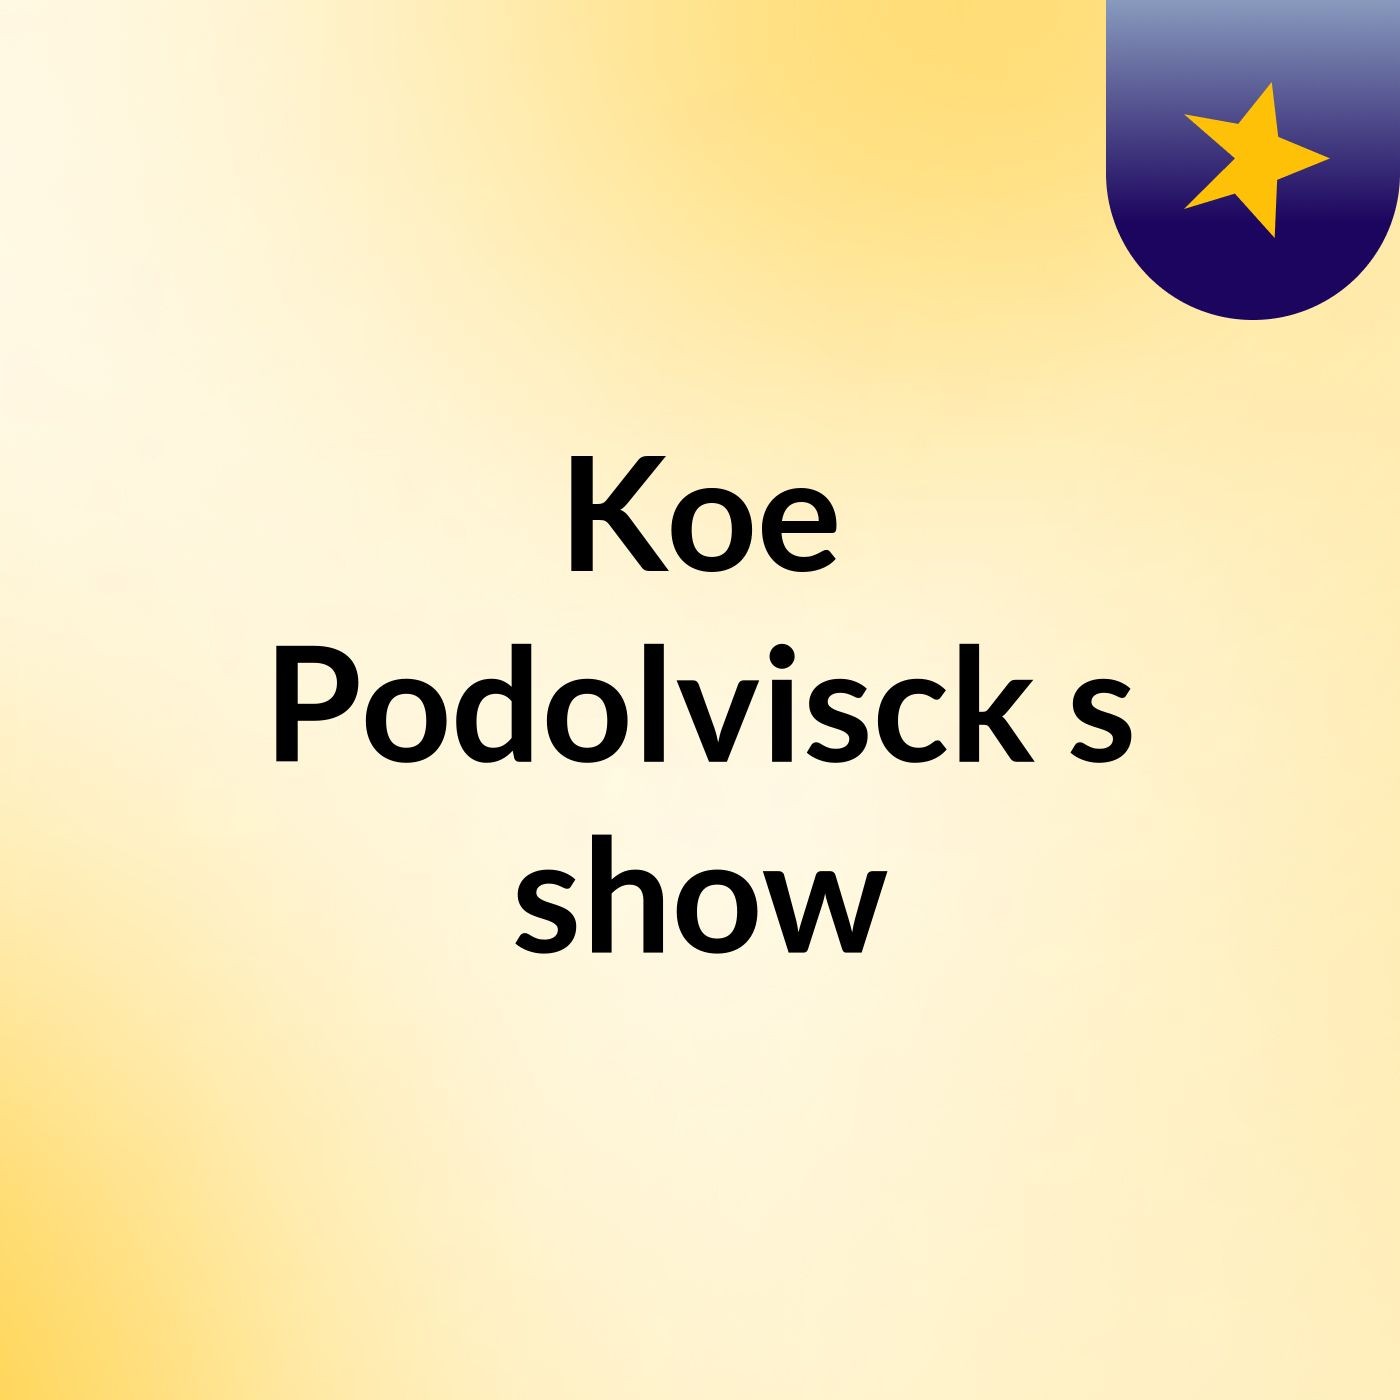 Koe Podolvisck's show